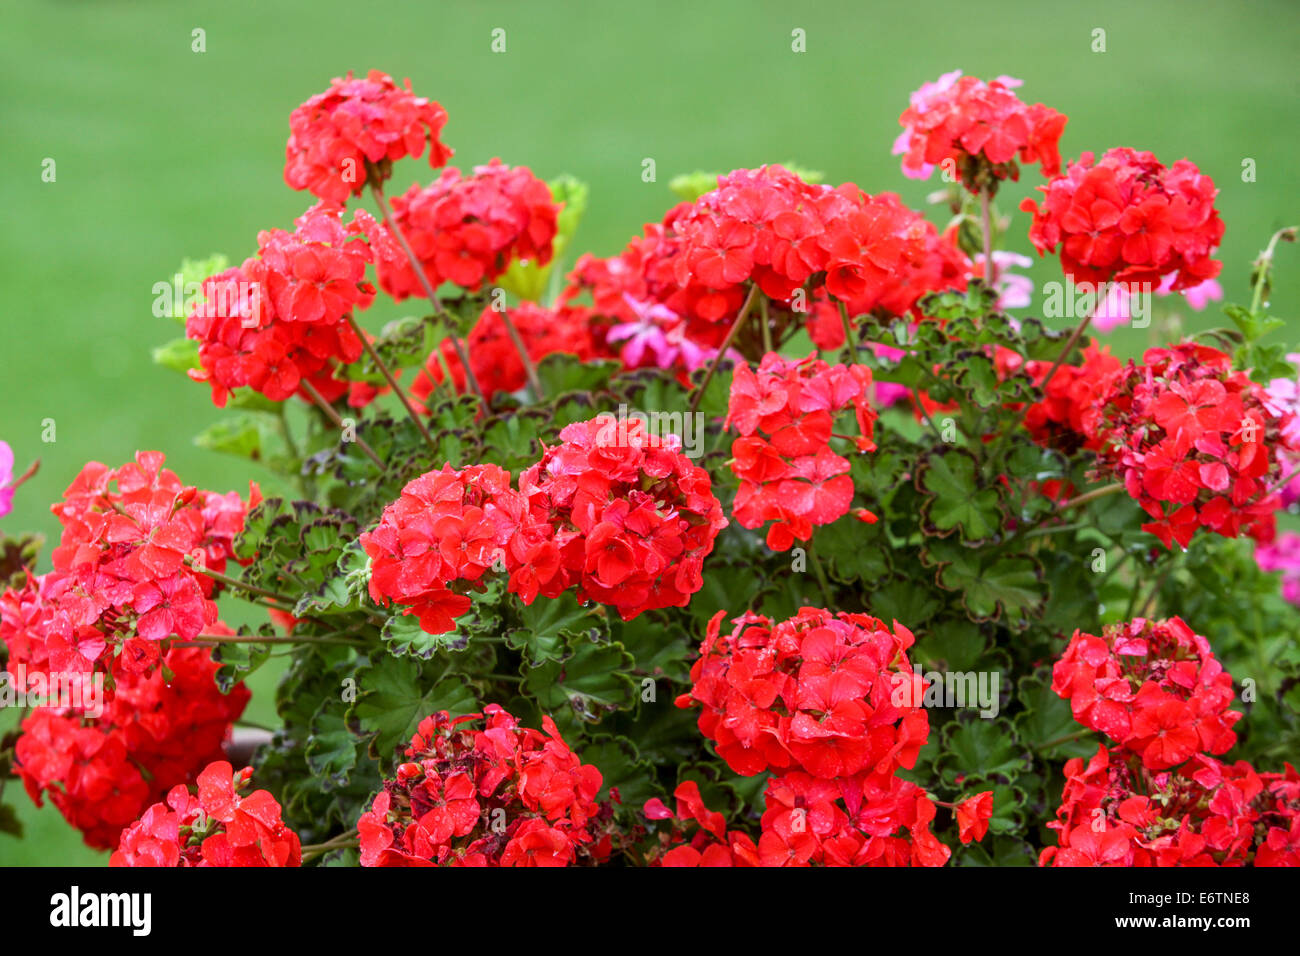 Red Geranium, Red Pelargonium flowers Stock Photo